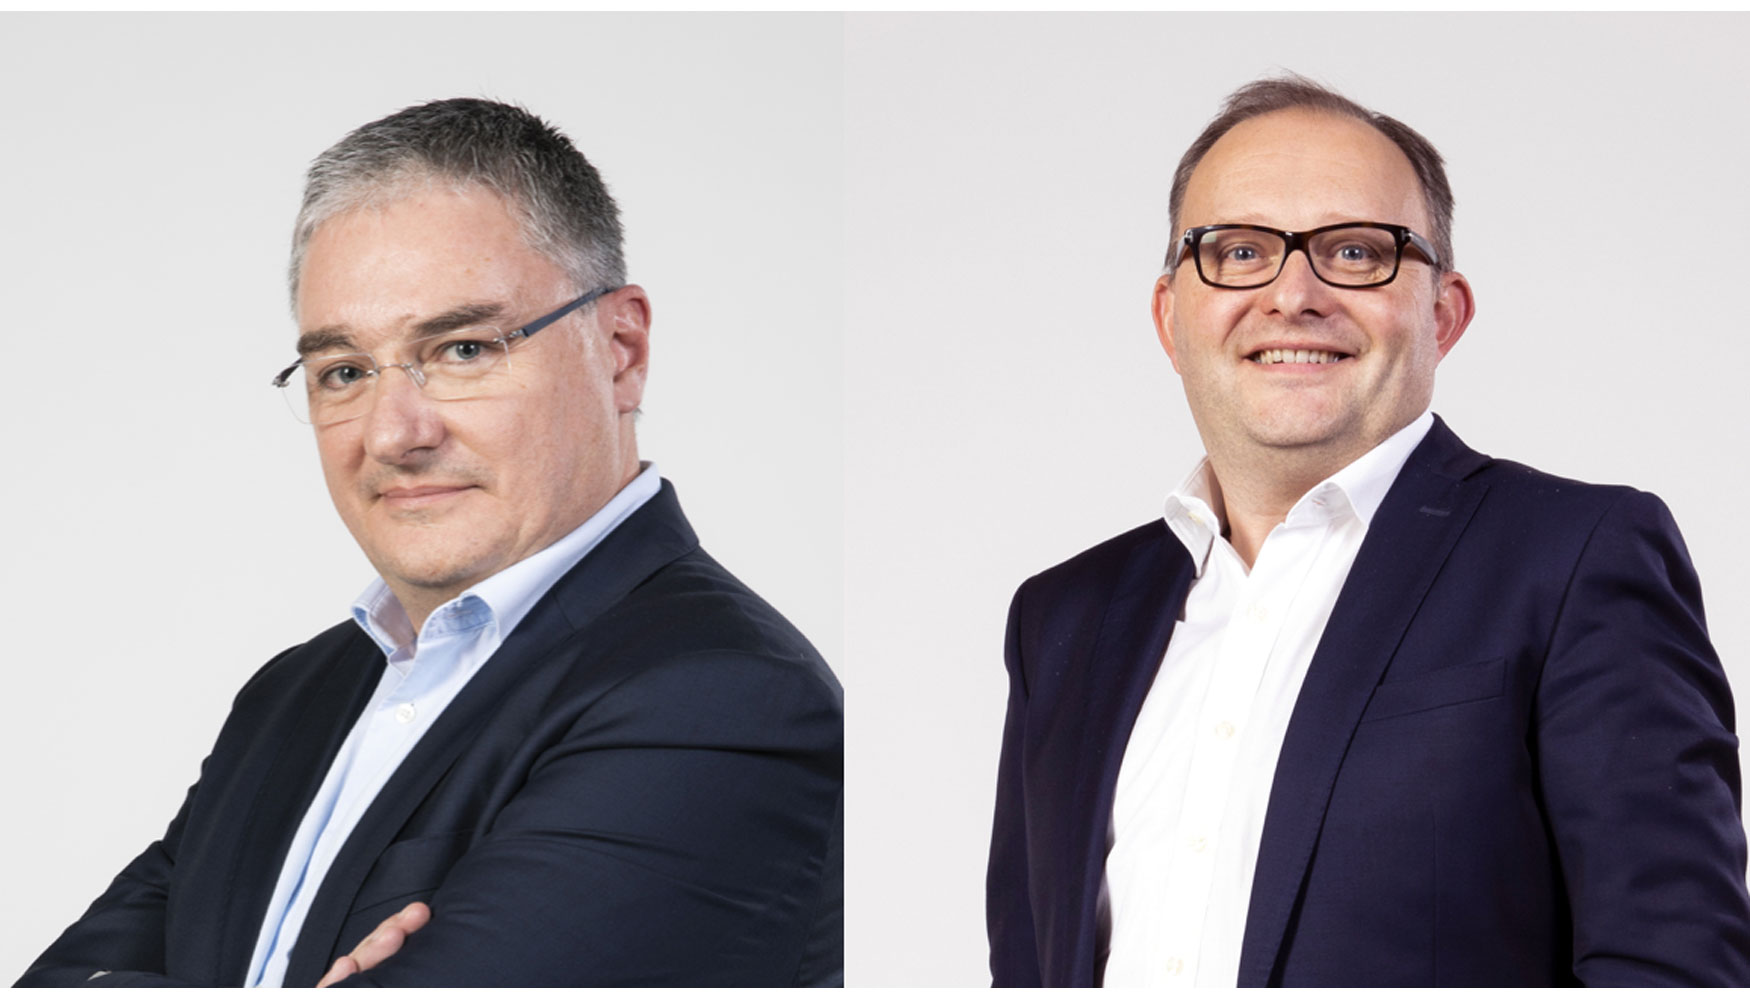 De izquierda a derecha: Patrice Mtairie, director industrial, y a Stphane Hubert, director de Experiencia al Cliente en Haulotte Group...